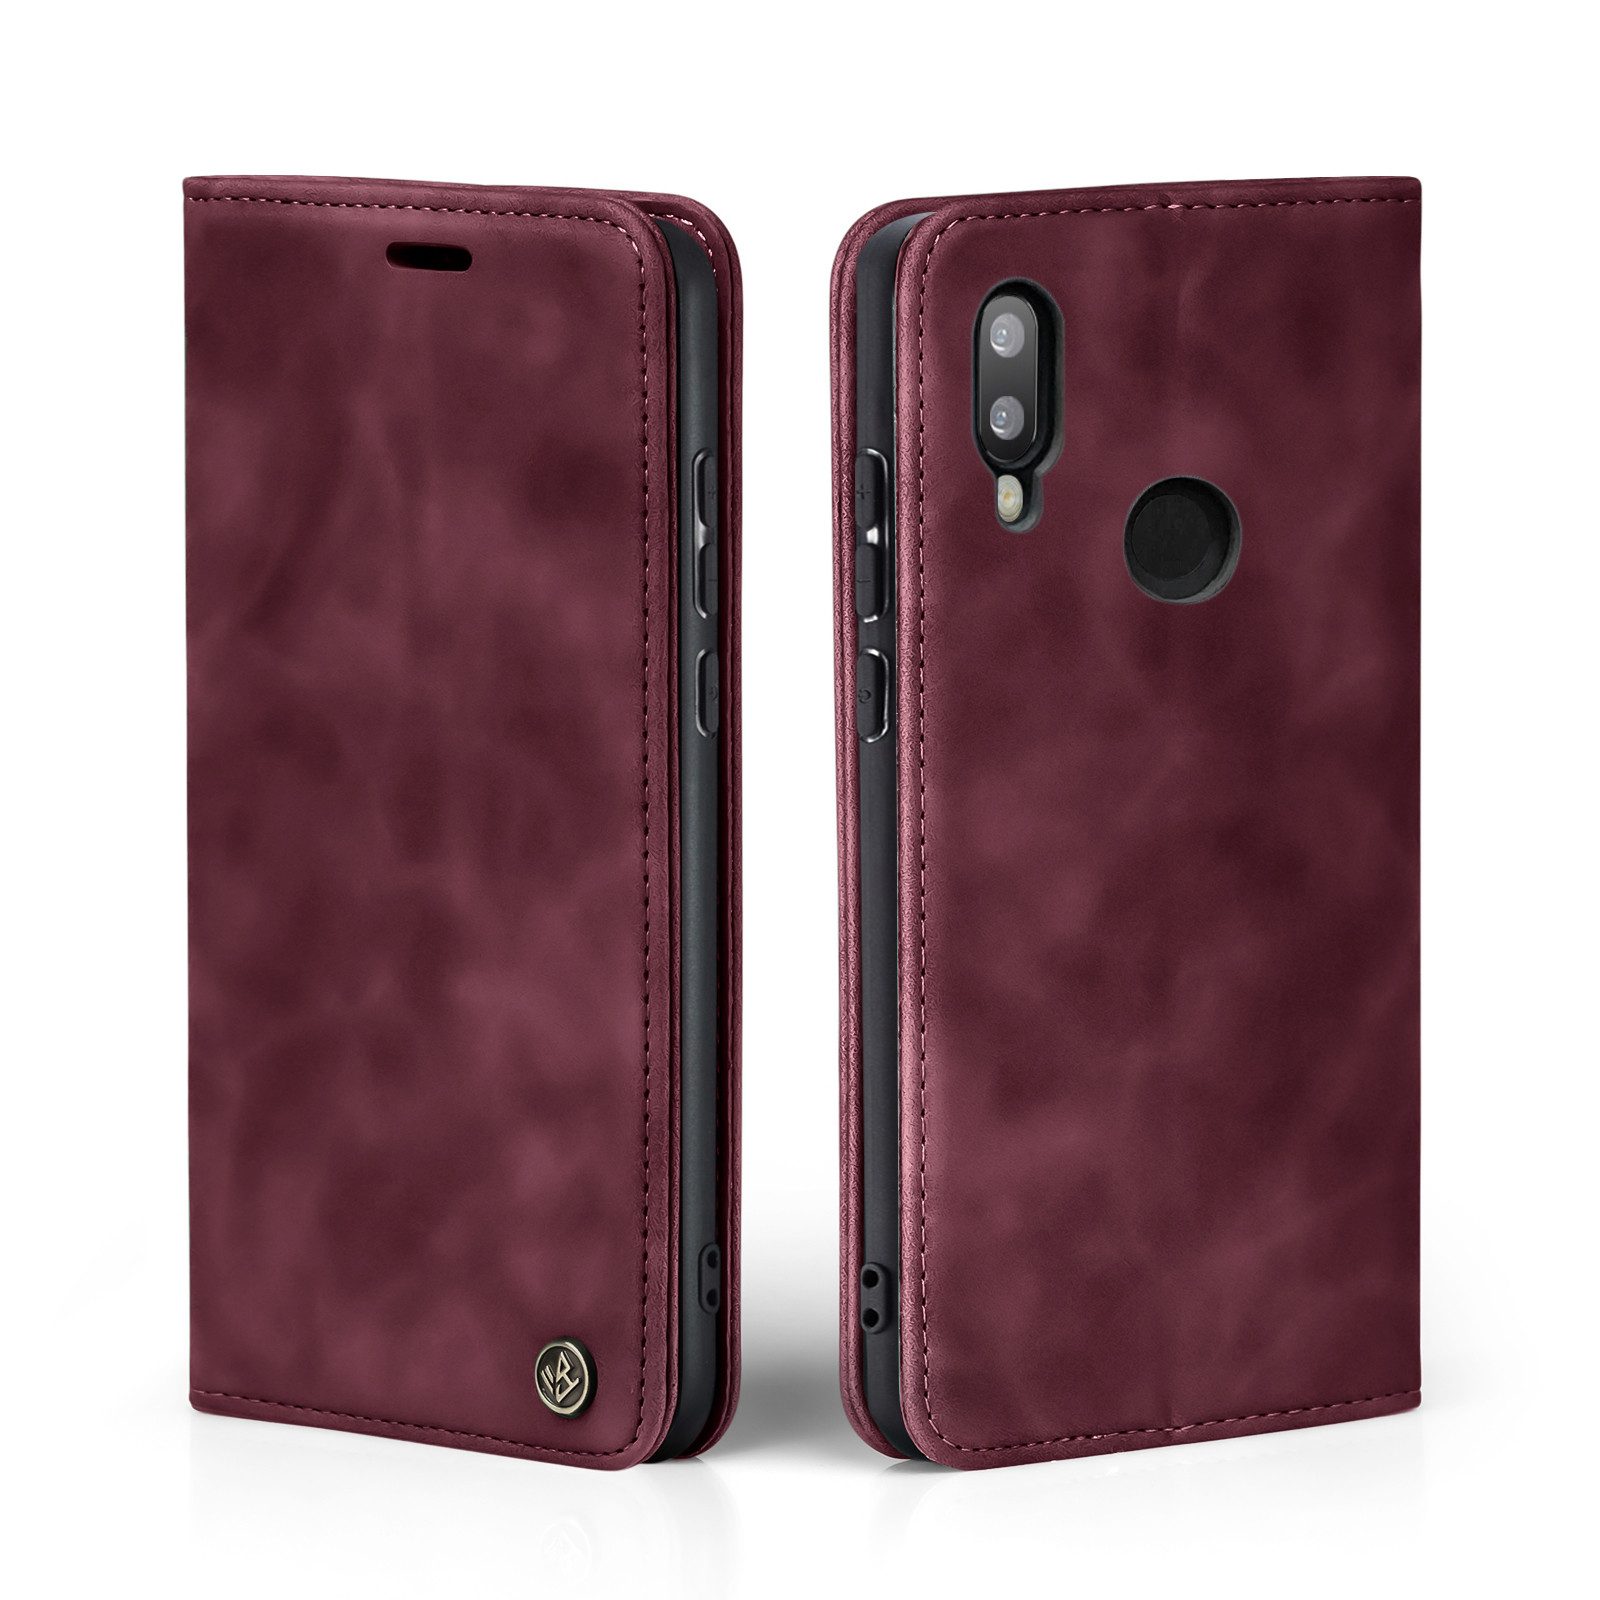 Tec-Expert Handyhülle Tasche Hülle für Huawei P20 Lite, Cover Klapphülle Case mit Kartenfach Fliphülle aufstellbar